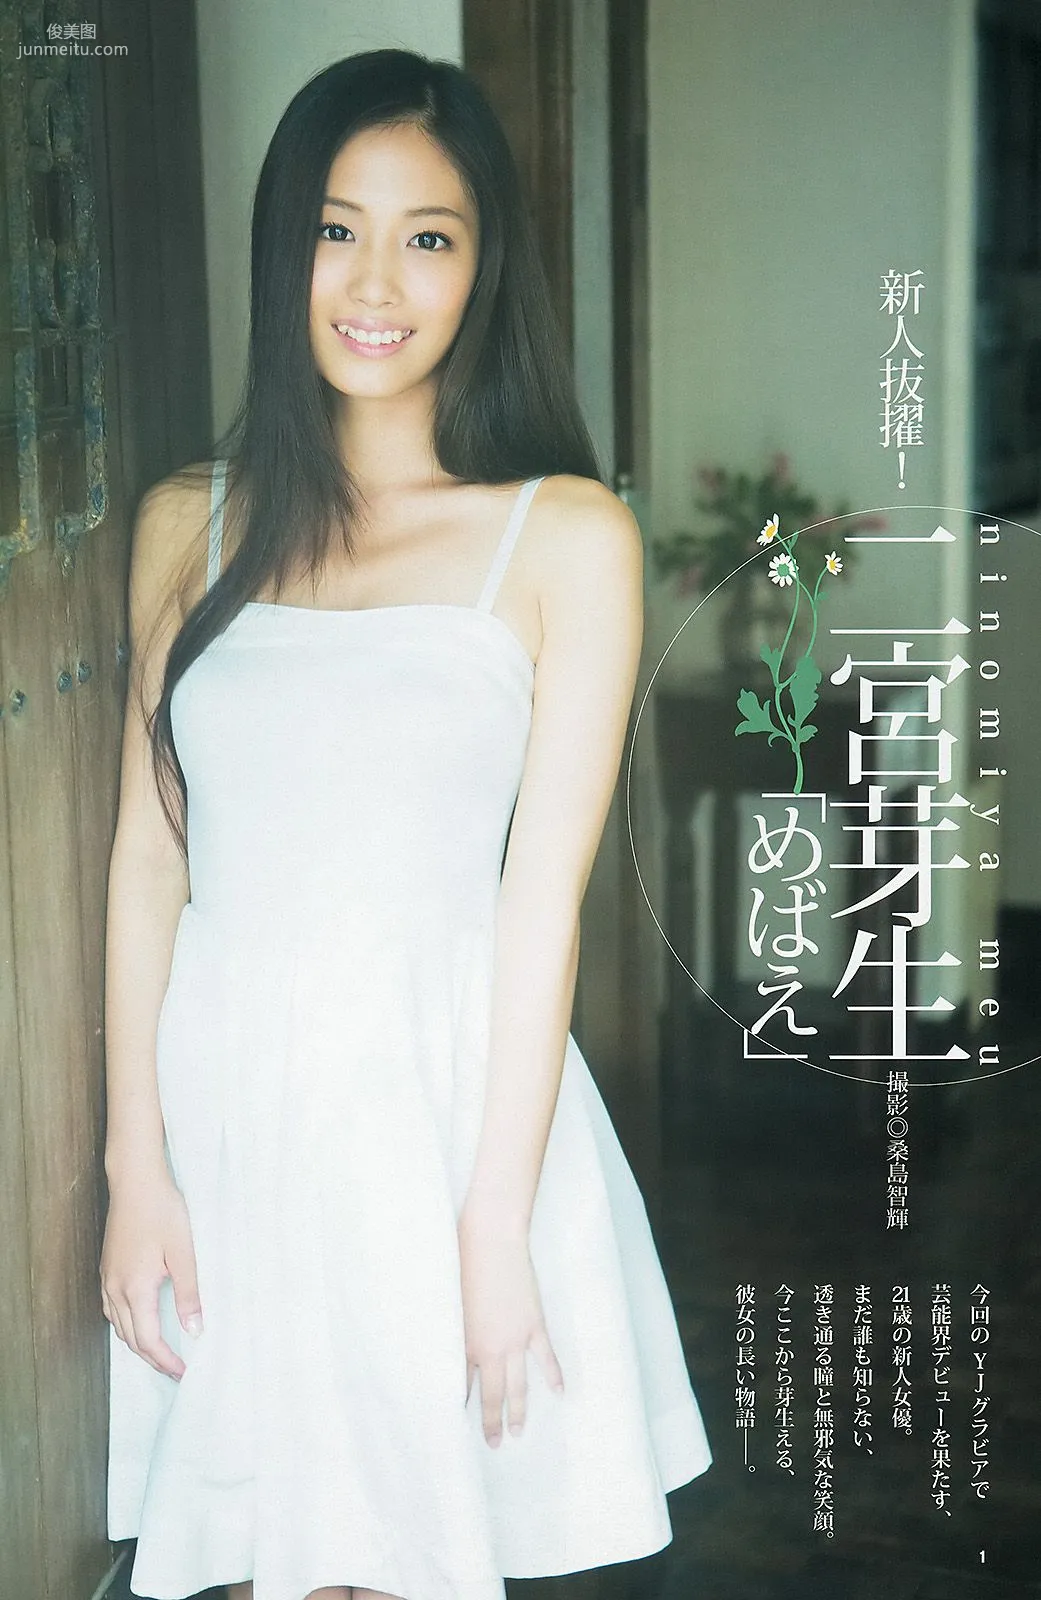 佐々木希 二宮芽生 仙石みなみ [Weekly Young Jump] 2013年No.40 写真杂志9